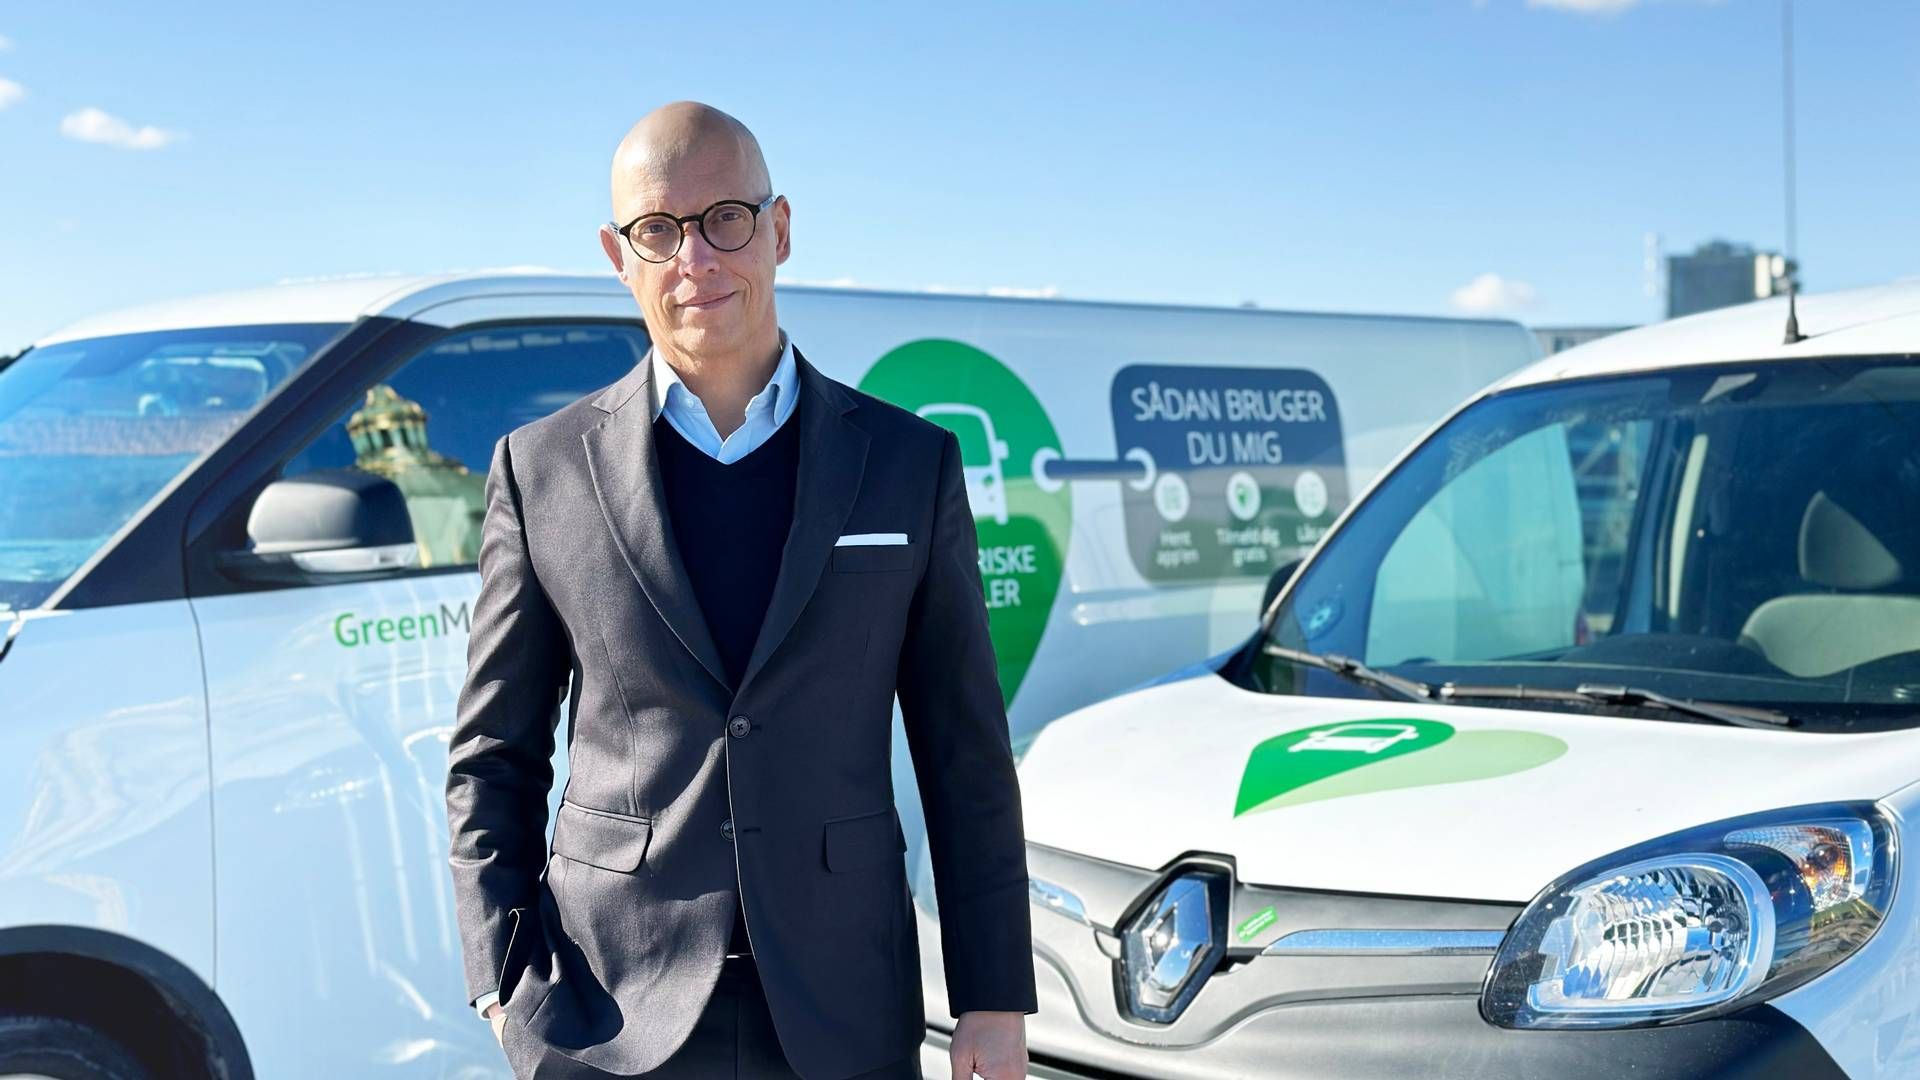 Kasper Gjedsted blev adm. direktør for Greenmobility i foråret og har tidligere været i biludlejningsbranchen. | Foto: Pr / Greenmobility